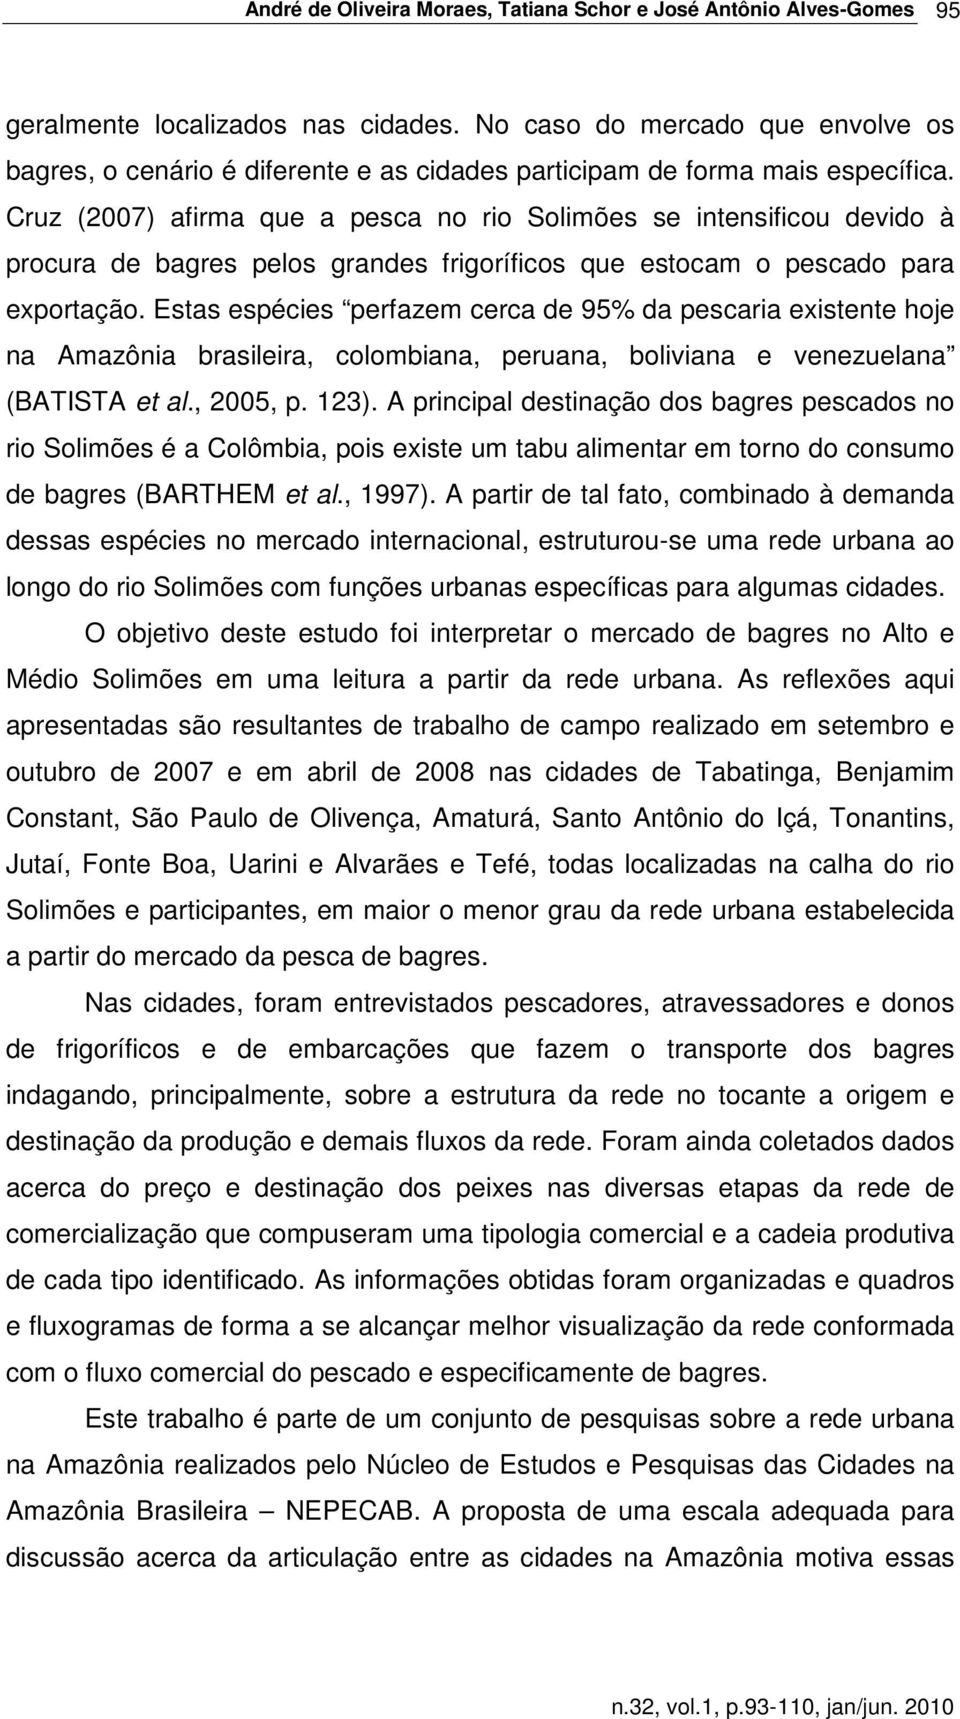 Cruz (2007) afirma que a pesca no rio Solimões se intensificou devido à procura de bagres pelos grandes frigoríficos que estocam o pescado para exportação.